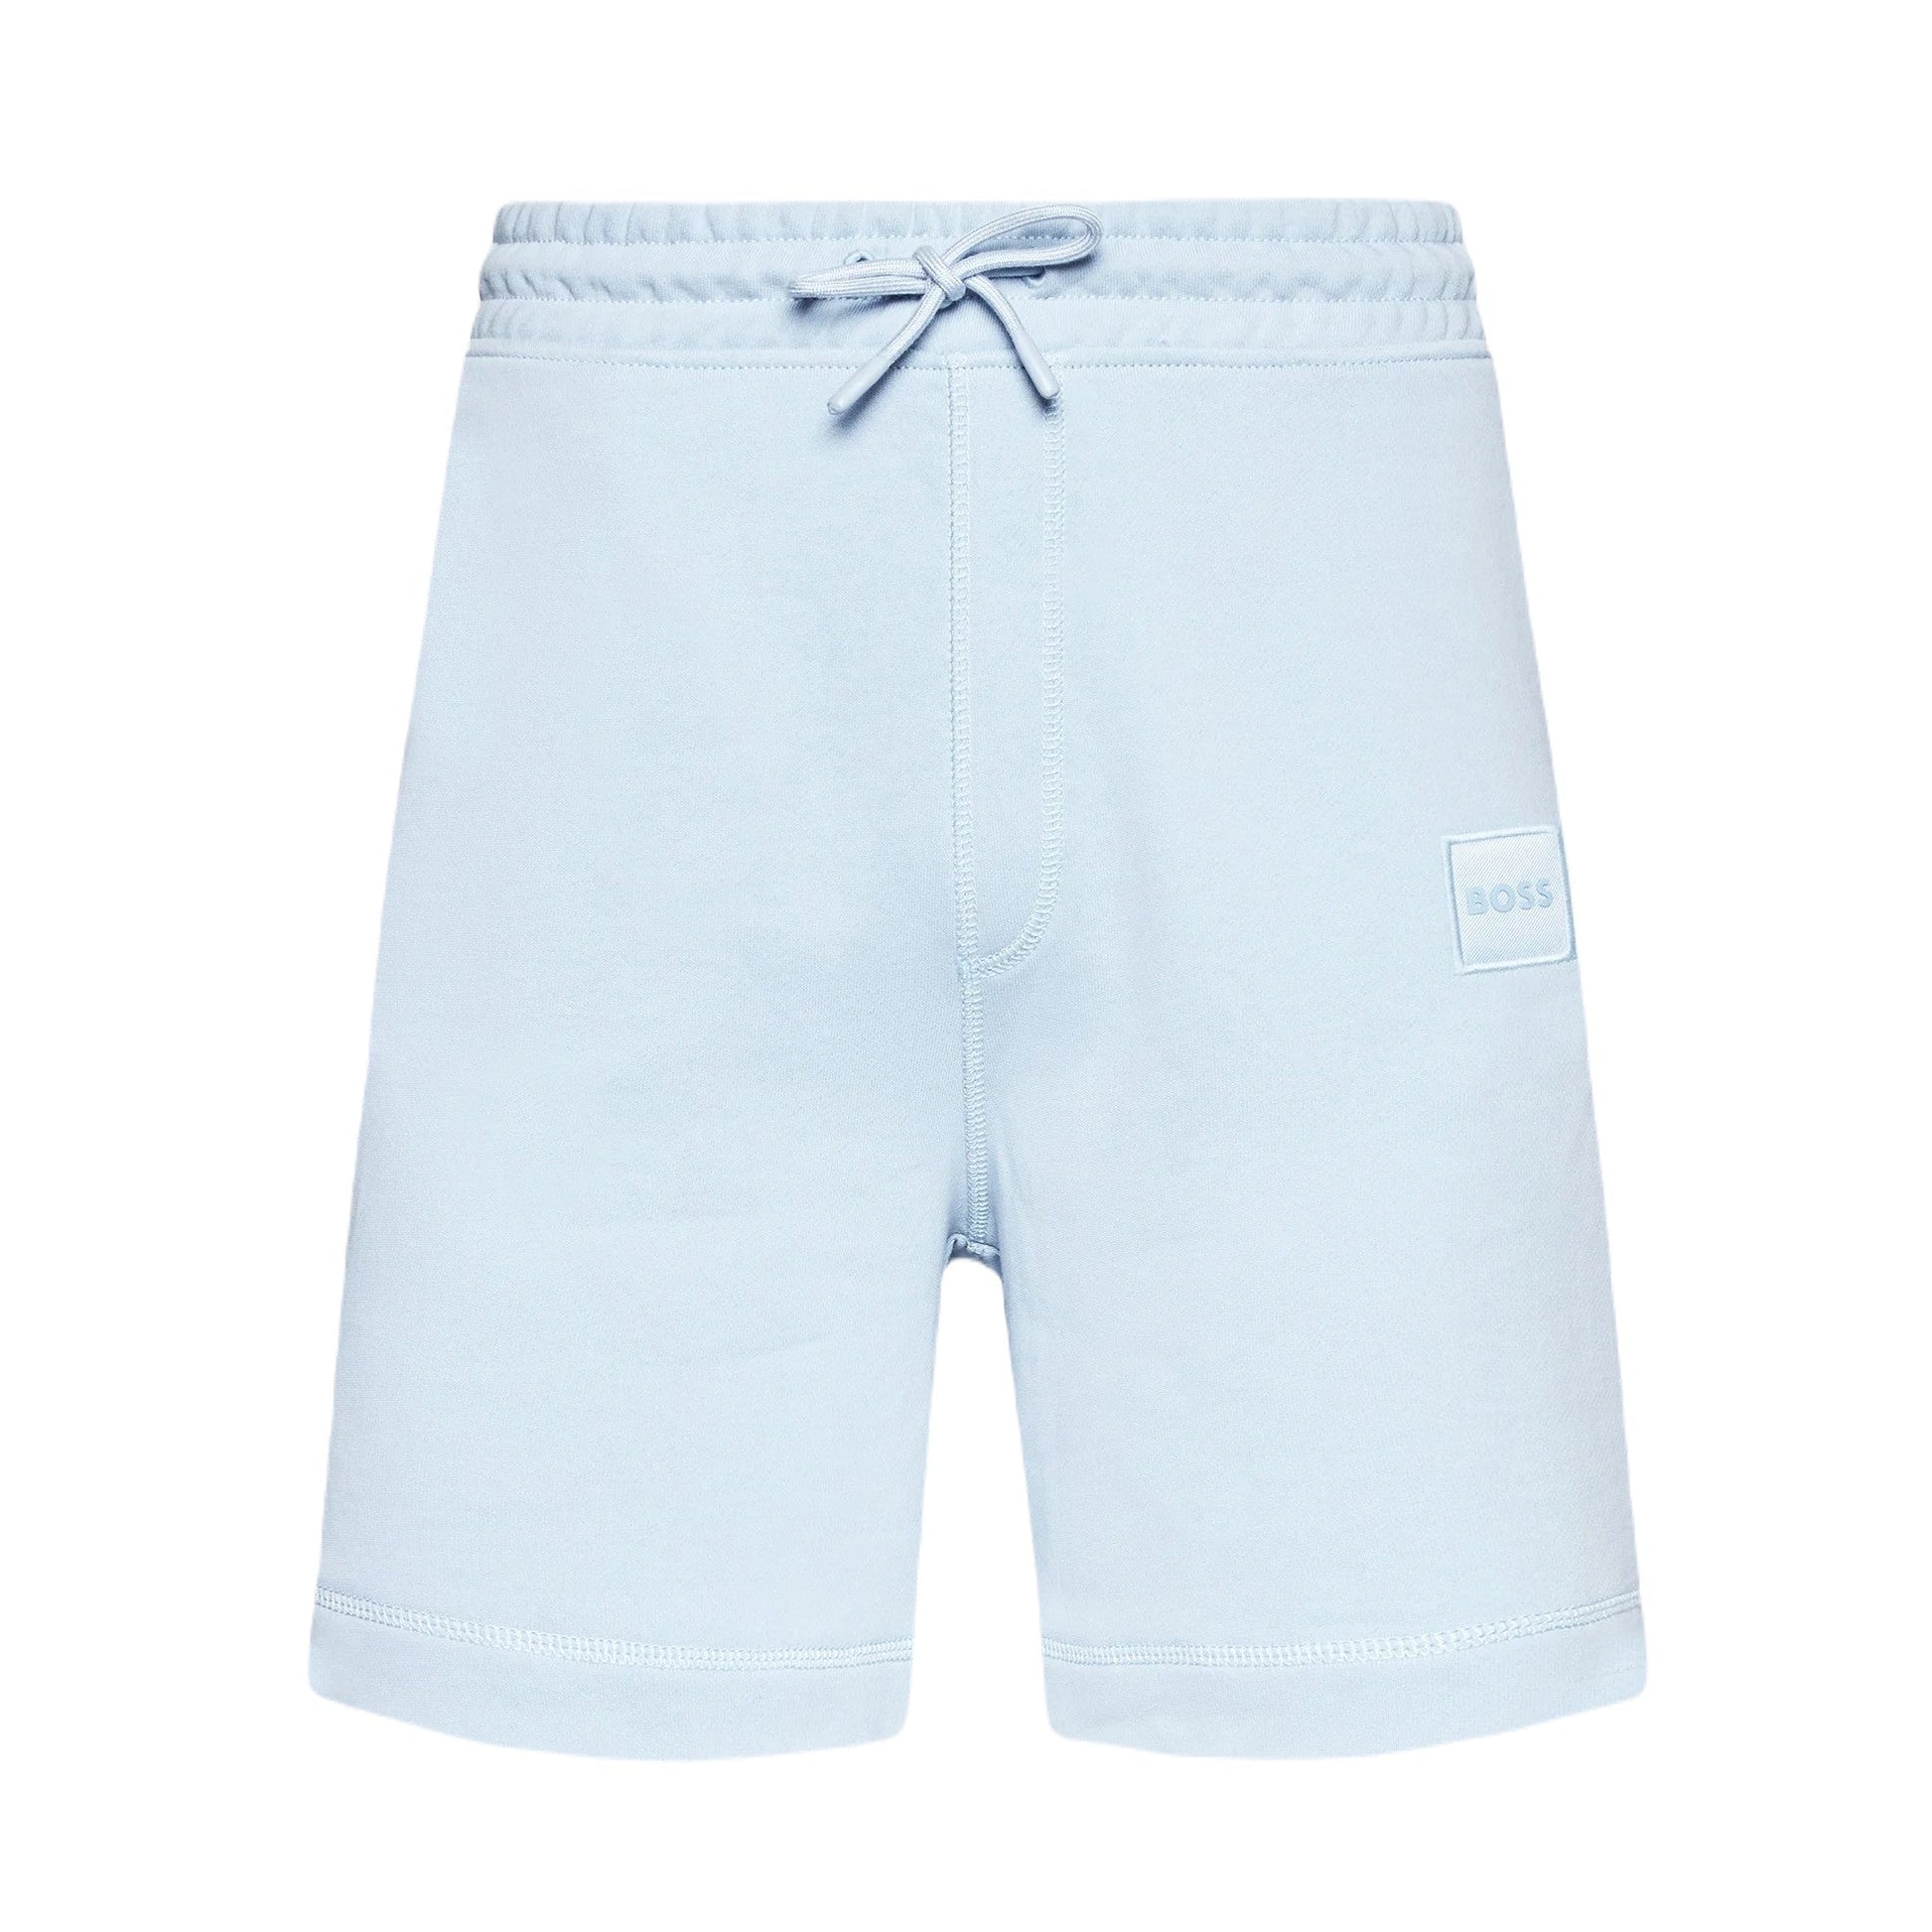 Boss Orange 50468454 Sewalk Sweat Shorts - 487 Light Blue - Escape Menswear